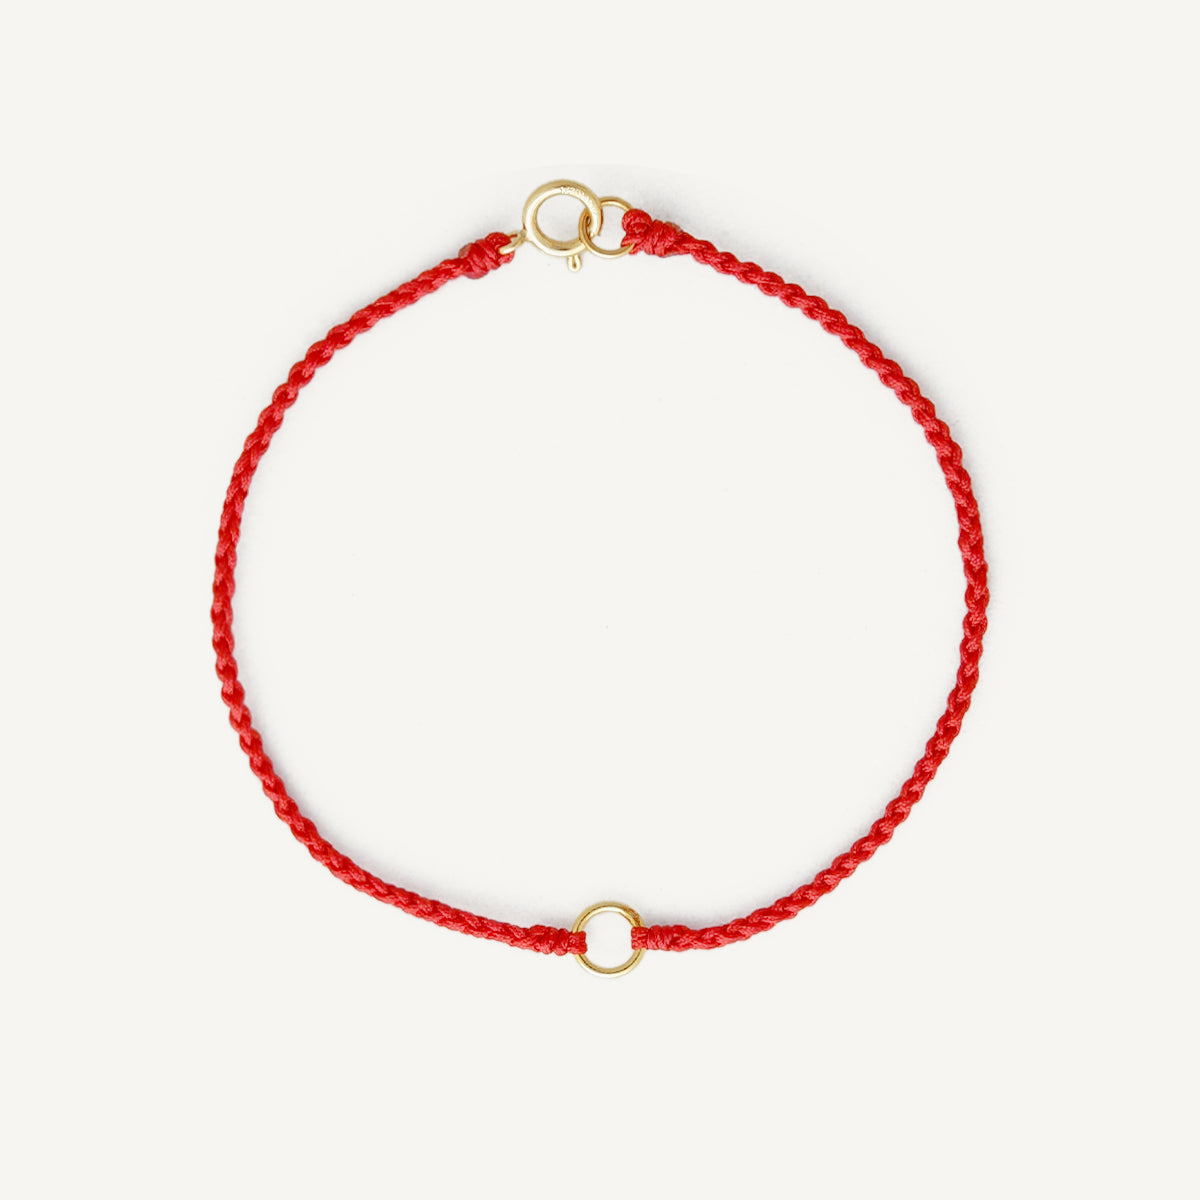 The Good Karma Red Line Bracelet and Anklet